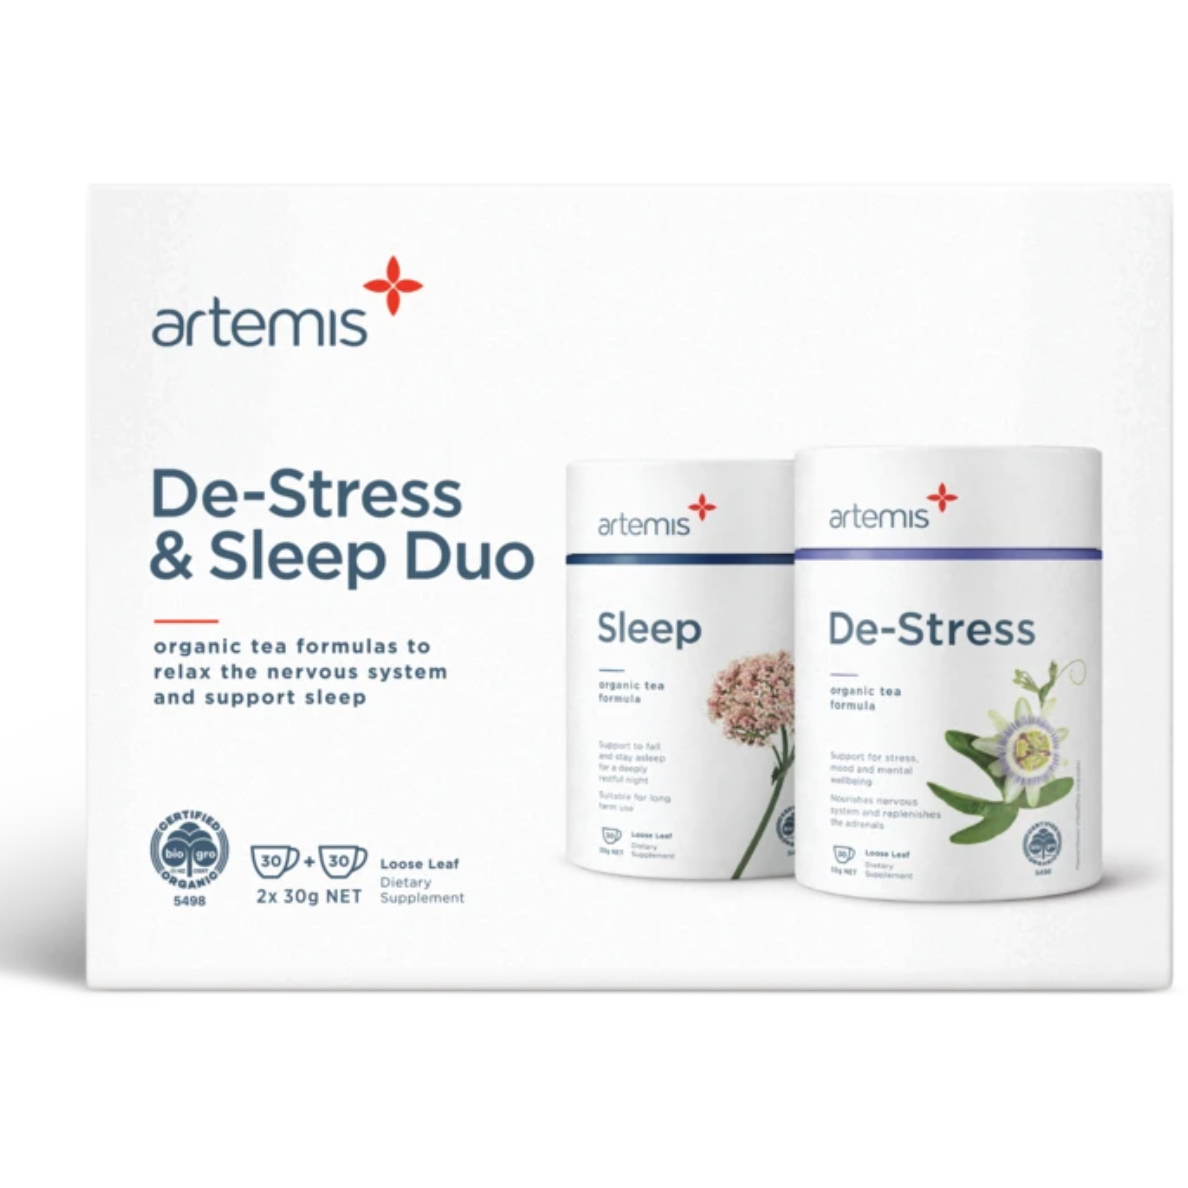 Artemis De-Stress & Sleep Duo 2x 30g